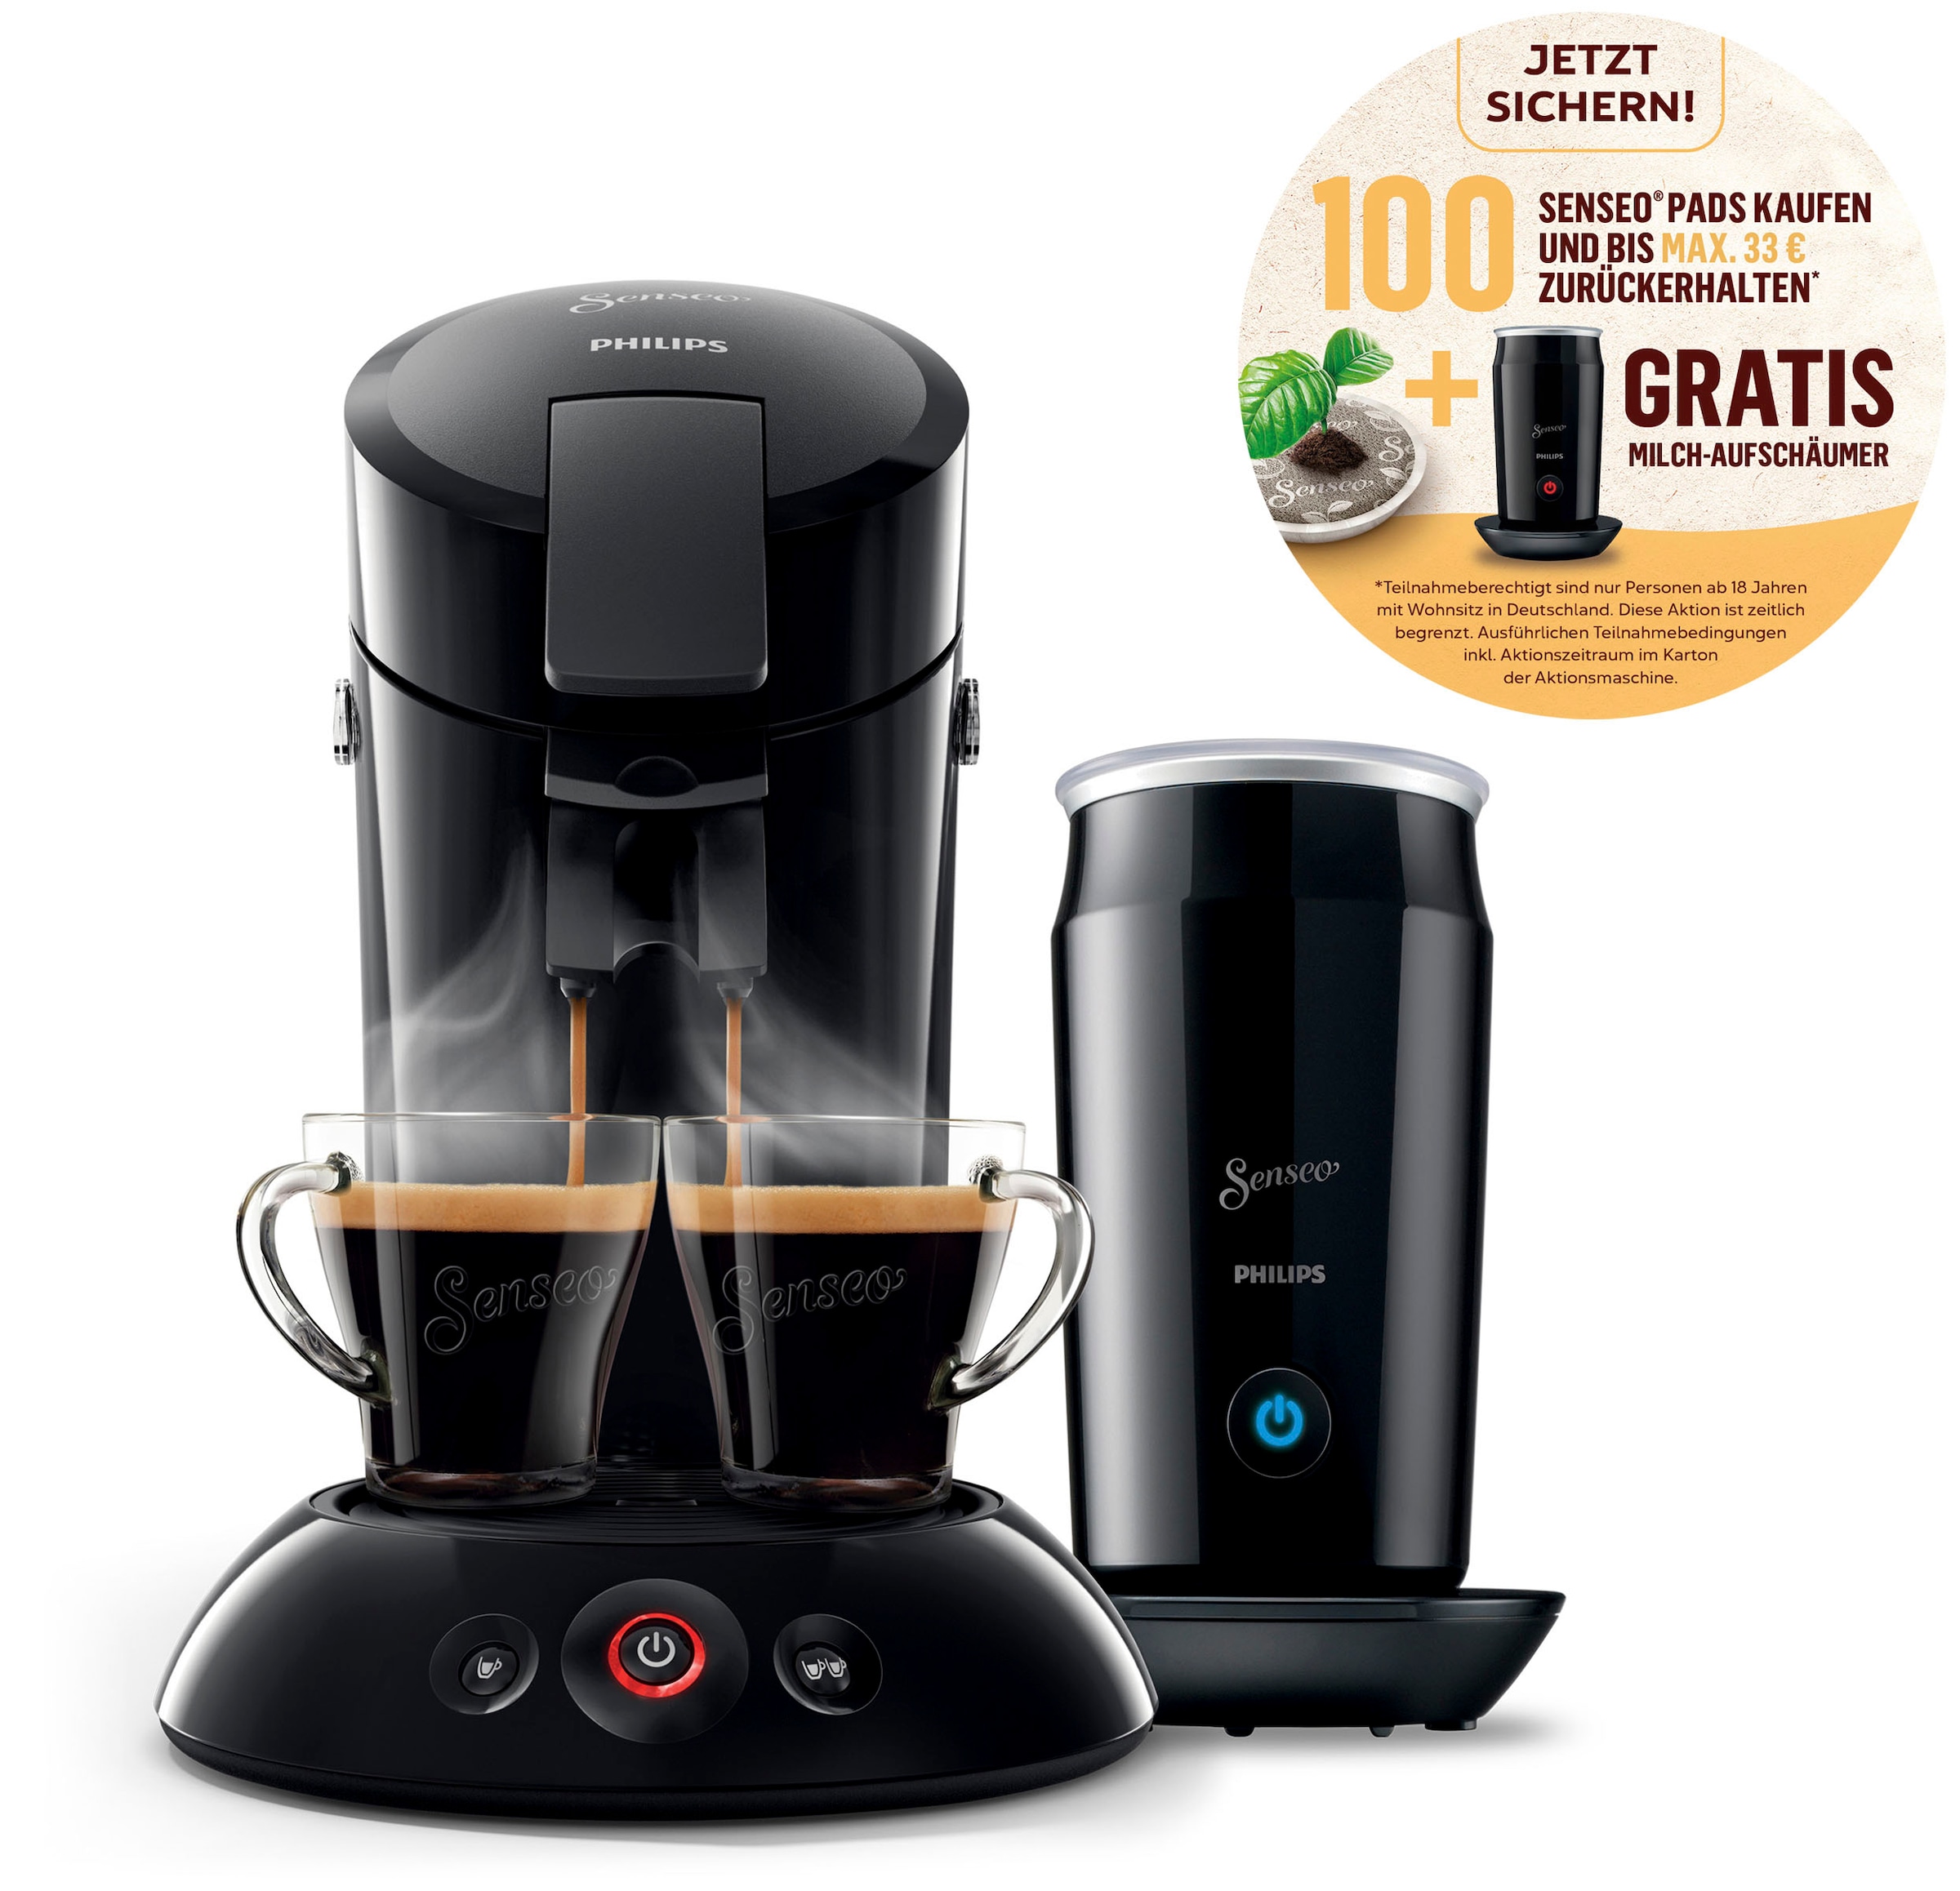 OTTO UVP HD6553/65«, 79,99 Wert online bei Milchaufschäumer im inkl. Philips Senseo von »Original € jetzt Kaffeepadmaschine